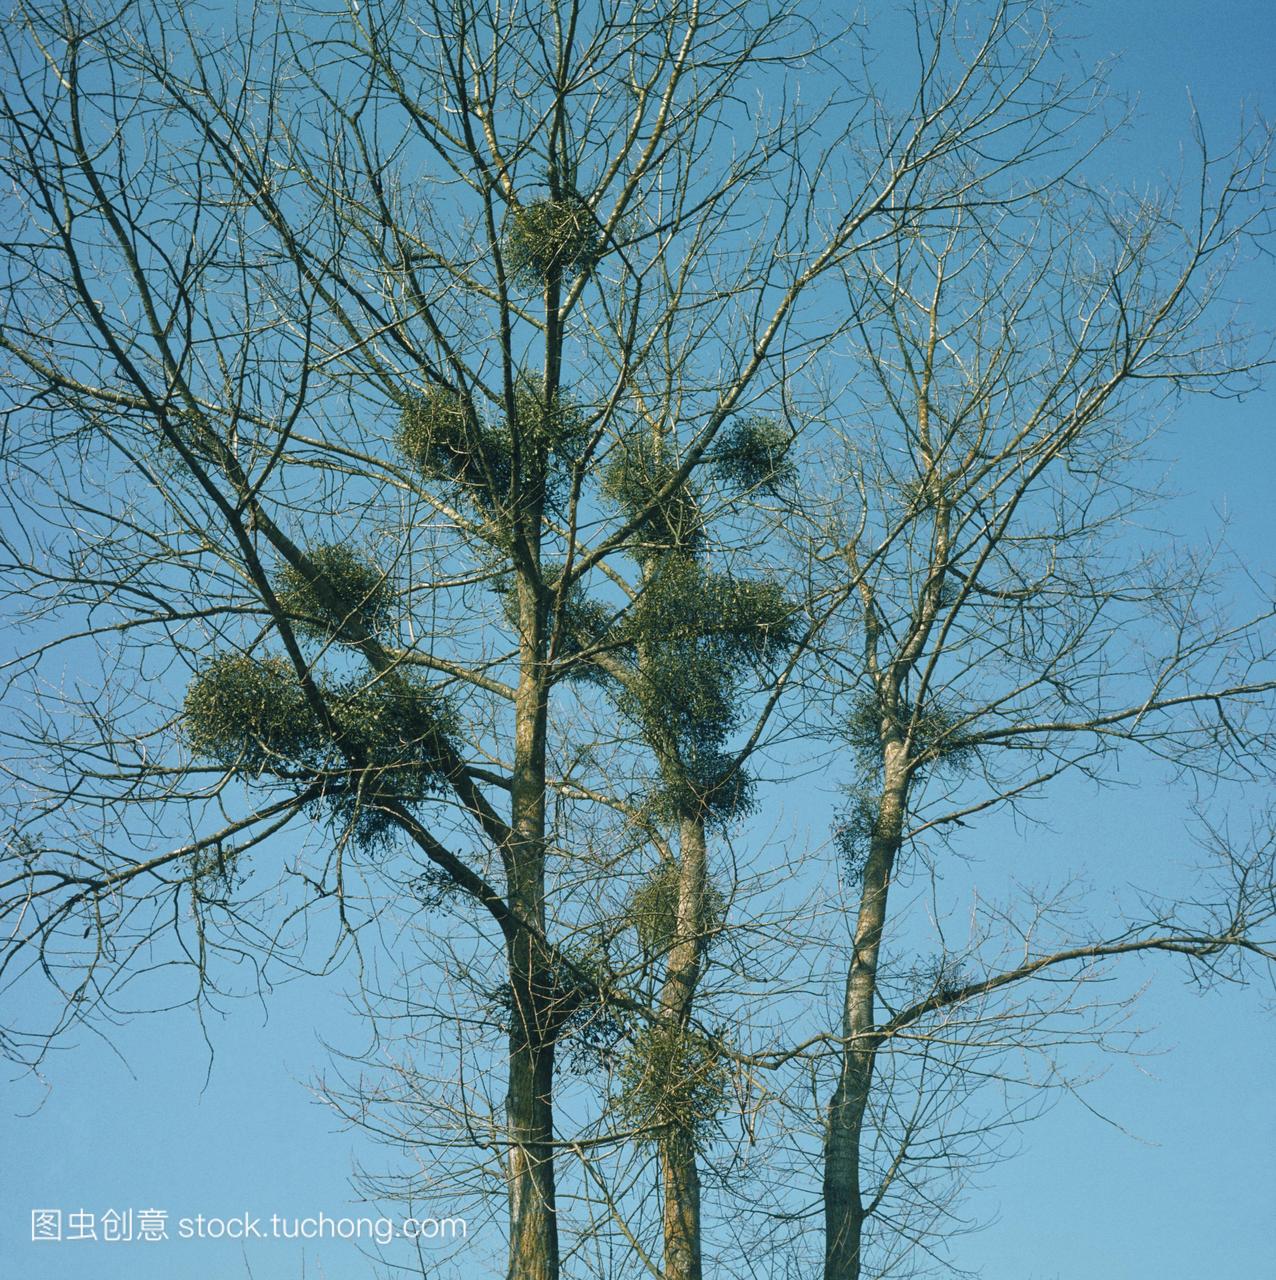 增长槲寄生槲寄生专辑的落叶树可能是黑杨树杨